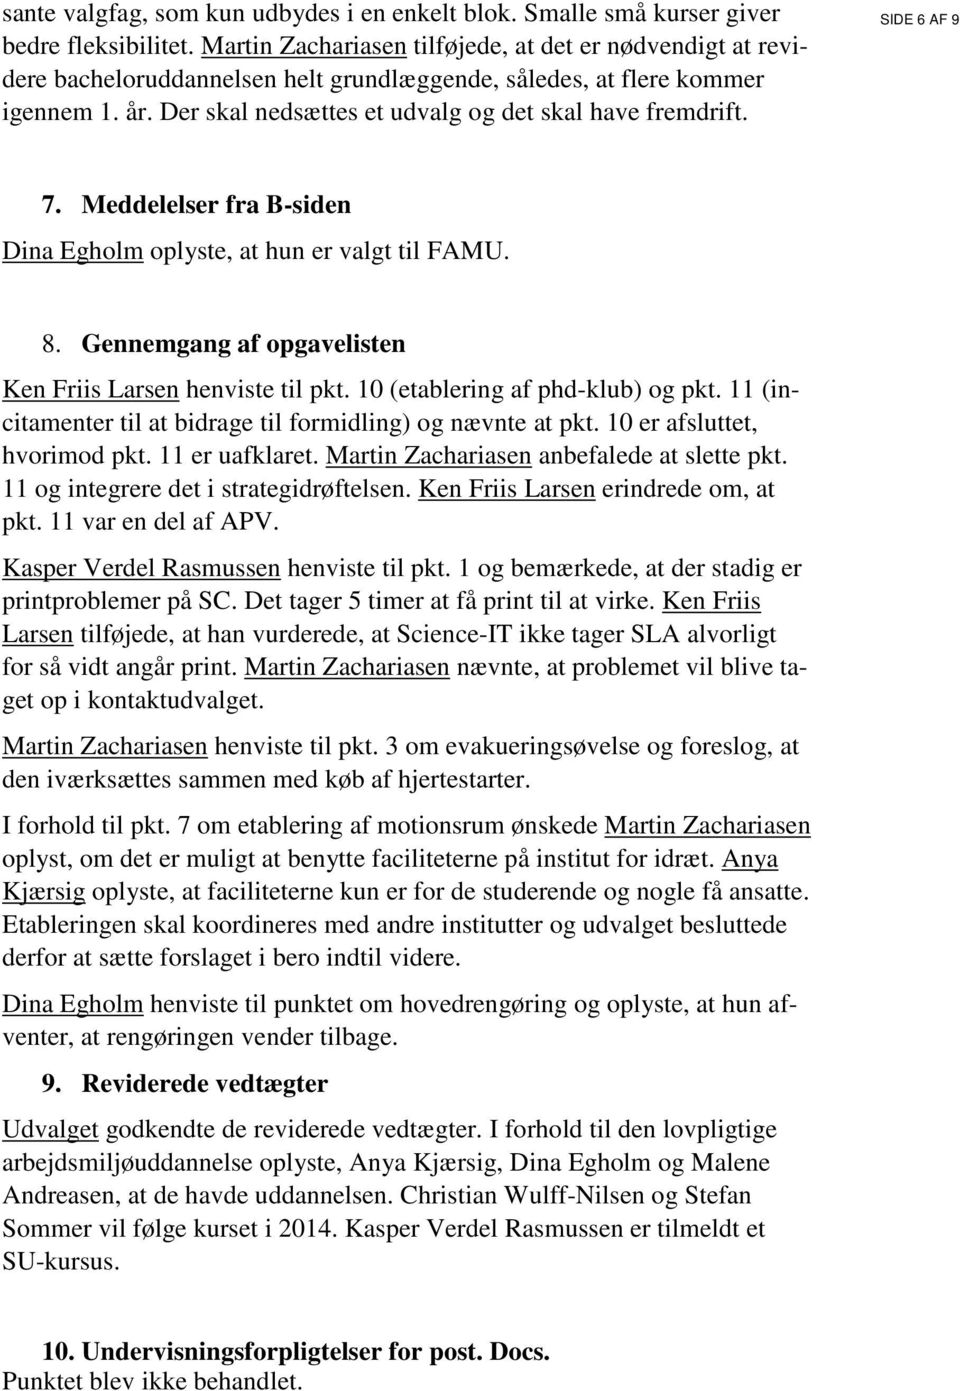 SIDE 6 AF 9 7. Meddelelser fra B-siden Dina Egholm oplyste, at hun er valgt til FAMU. 8. Gennemgang af opgavelisten Ken Friis Larsen henviste til pkt. 10 (etablering af phd-klub) og pkt.